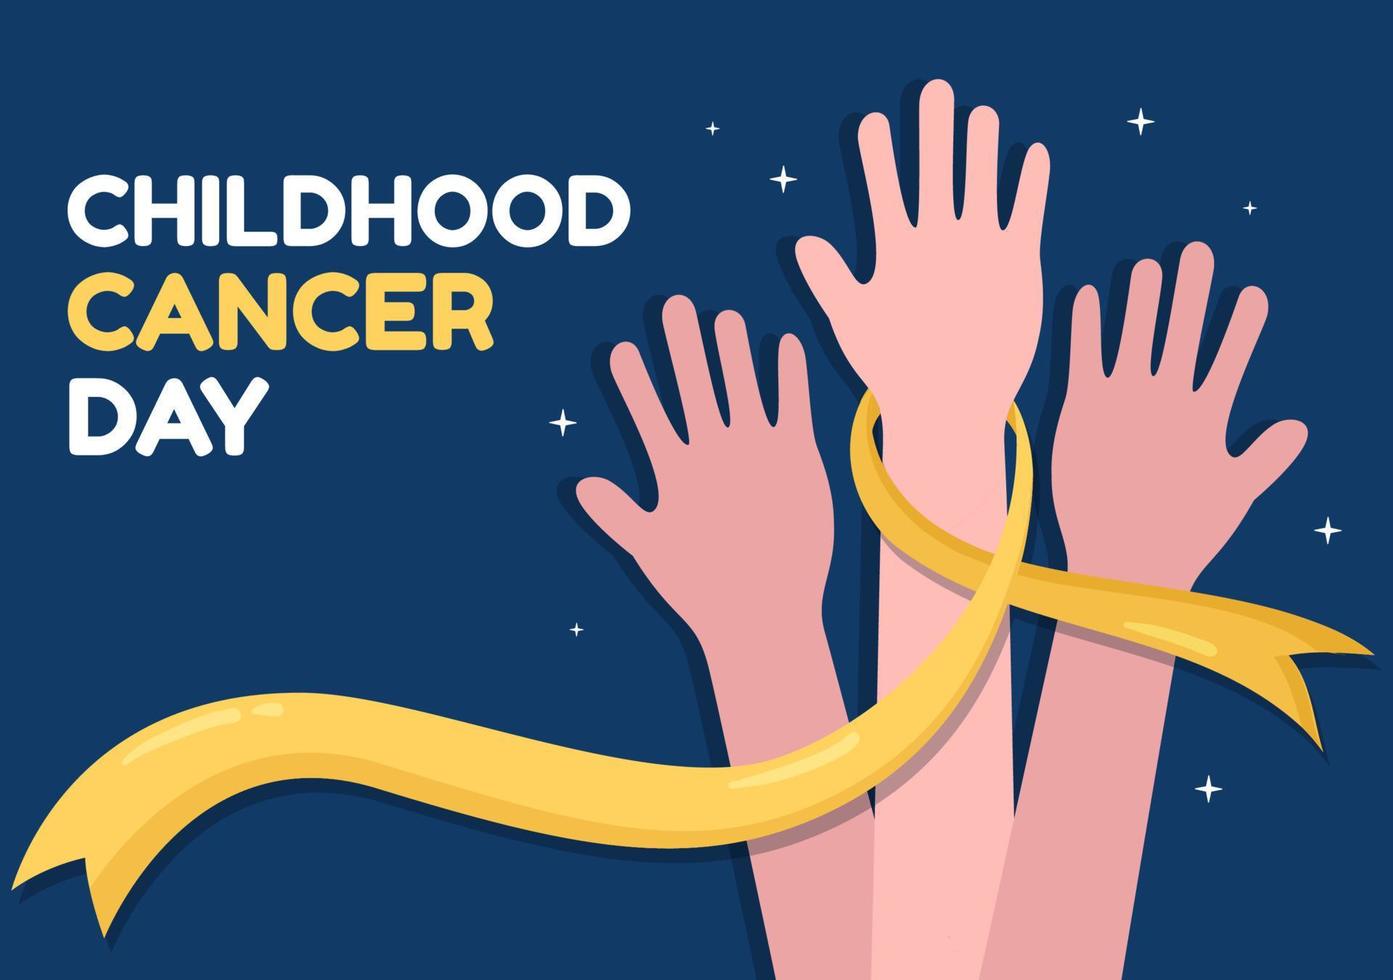 internationell barndom cancer dag hand dragen tecknad serie illustration på februari 15 för höjning medel, främja de förebyggande och uttrycka Stöd vektor